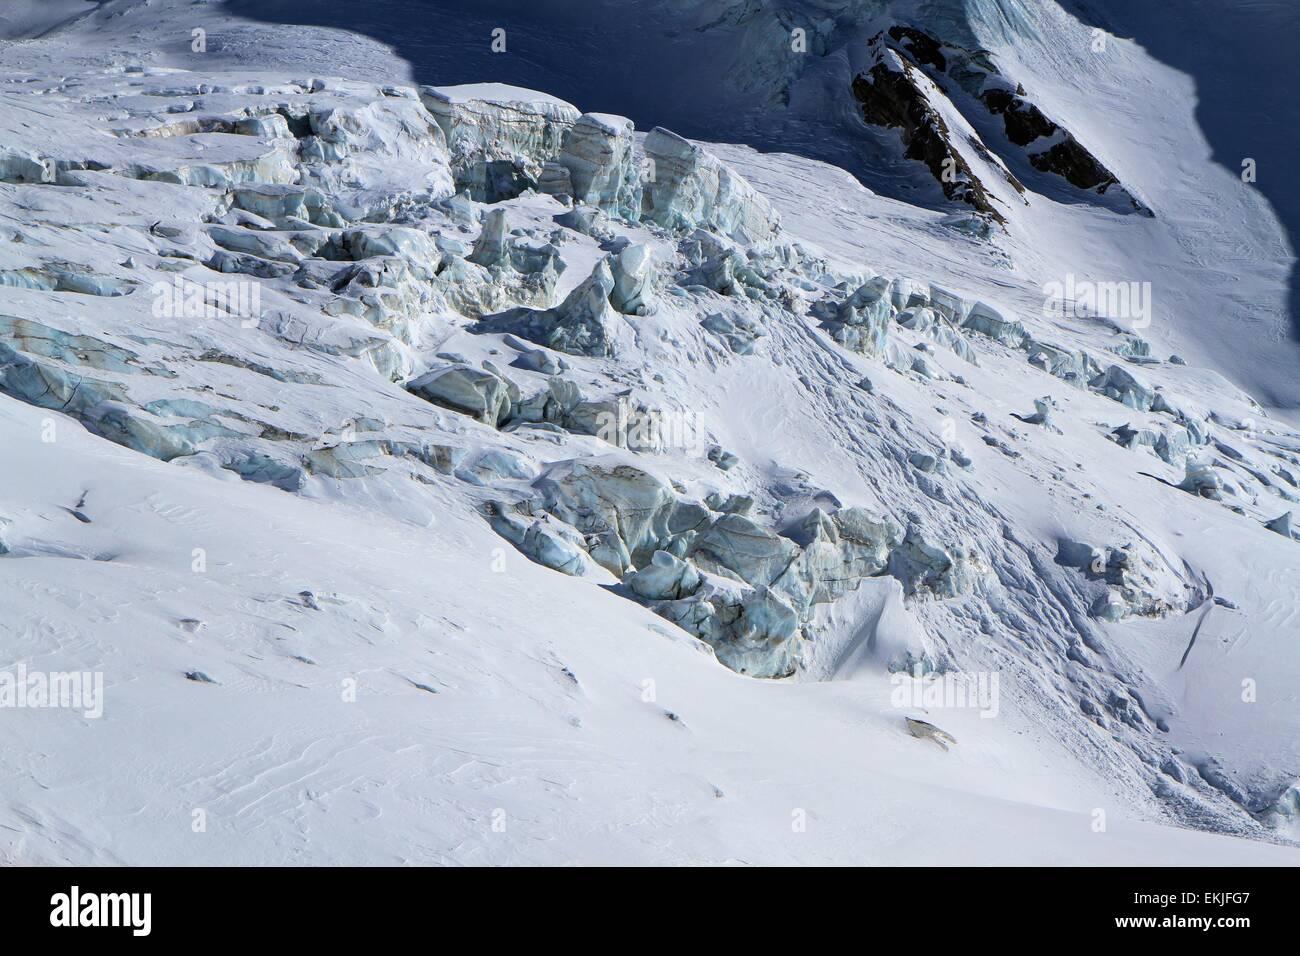 Alpine glacier, Saas Grund, Alps, Switzerland Stock Photo